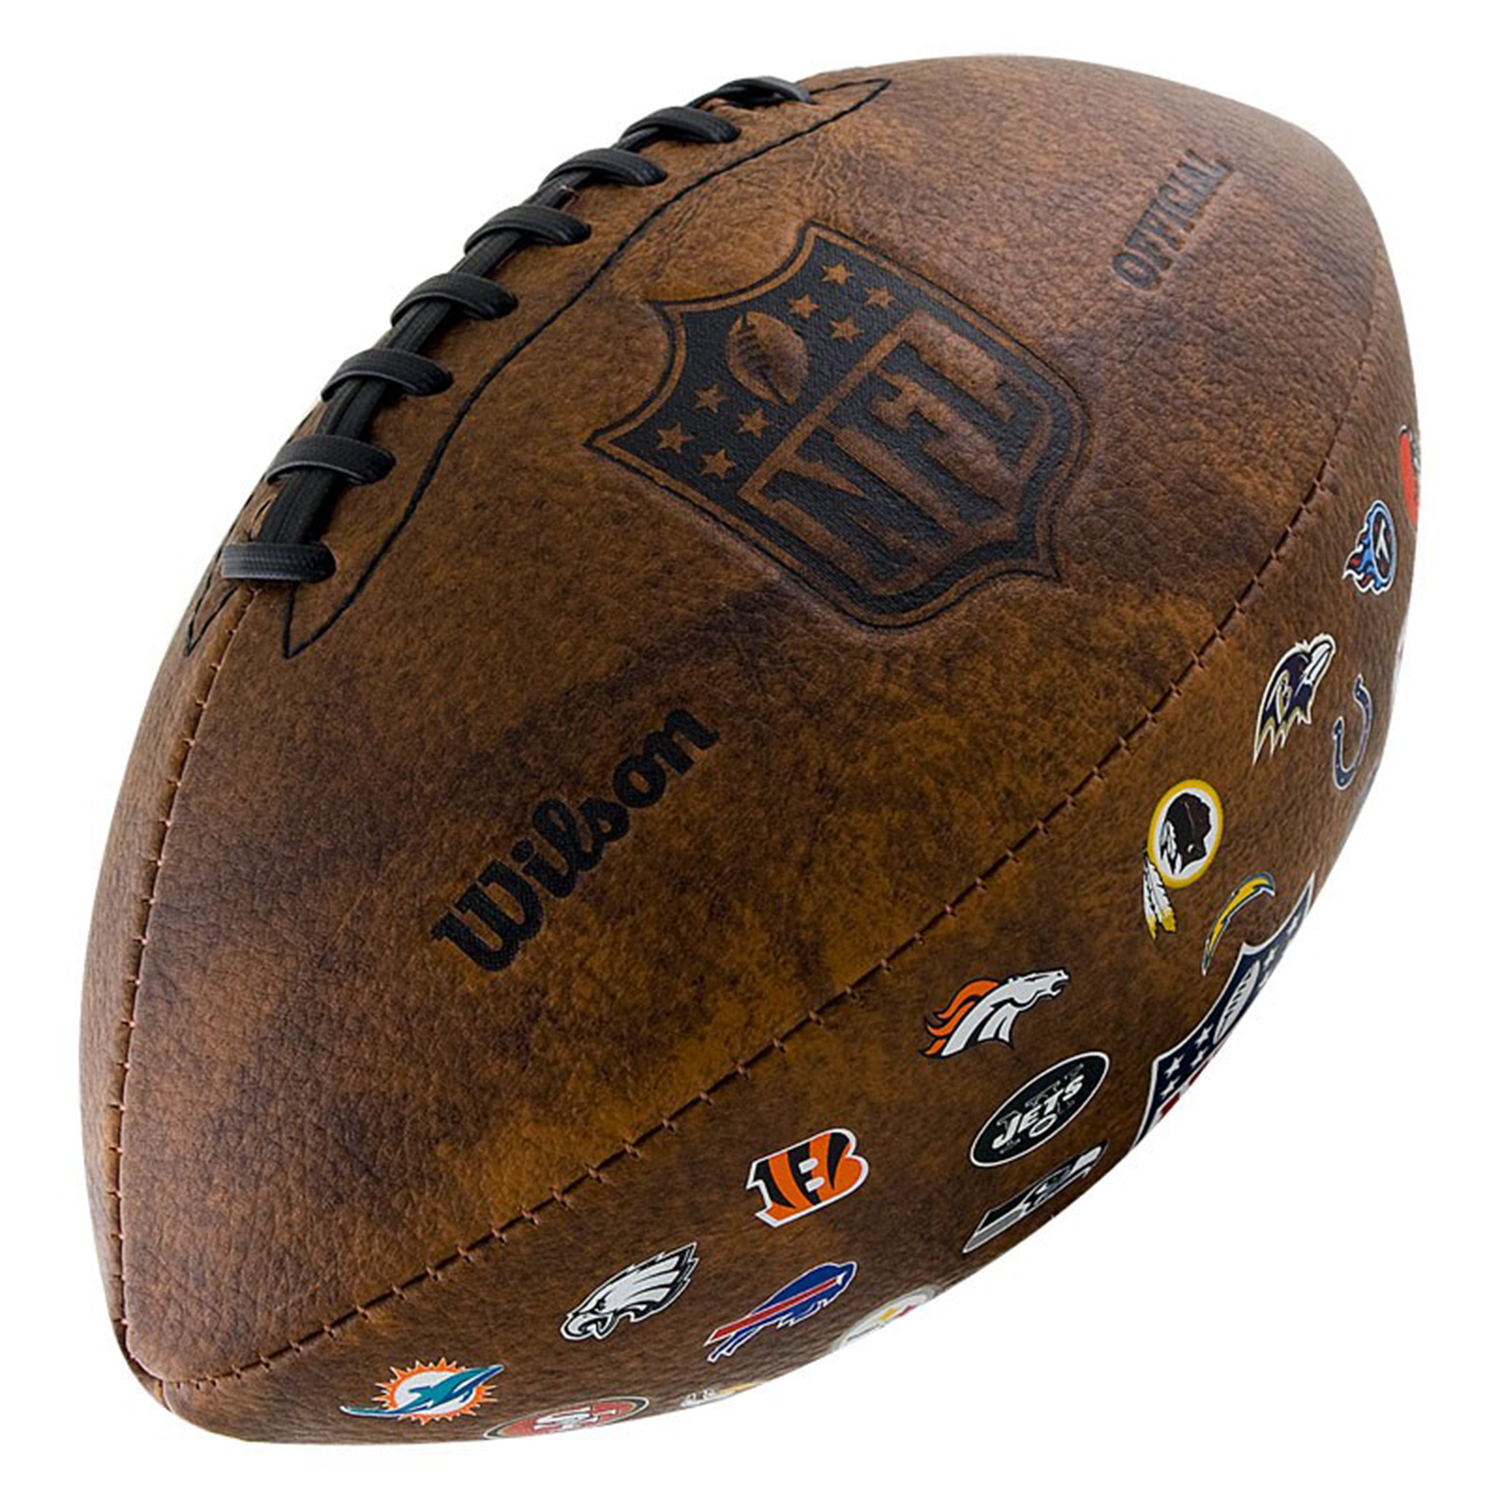 Купить американского футбола. Мяч Wilson NFL. Мяч для американского футбола Wilson NFL. Мяч для регби Wilson NFL. Вилсон мяч регбийный.